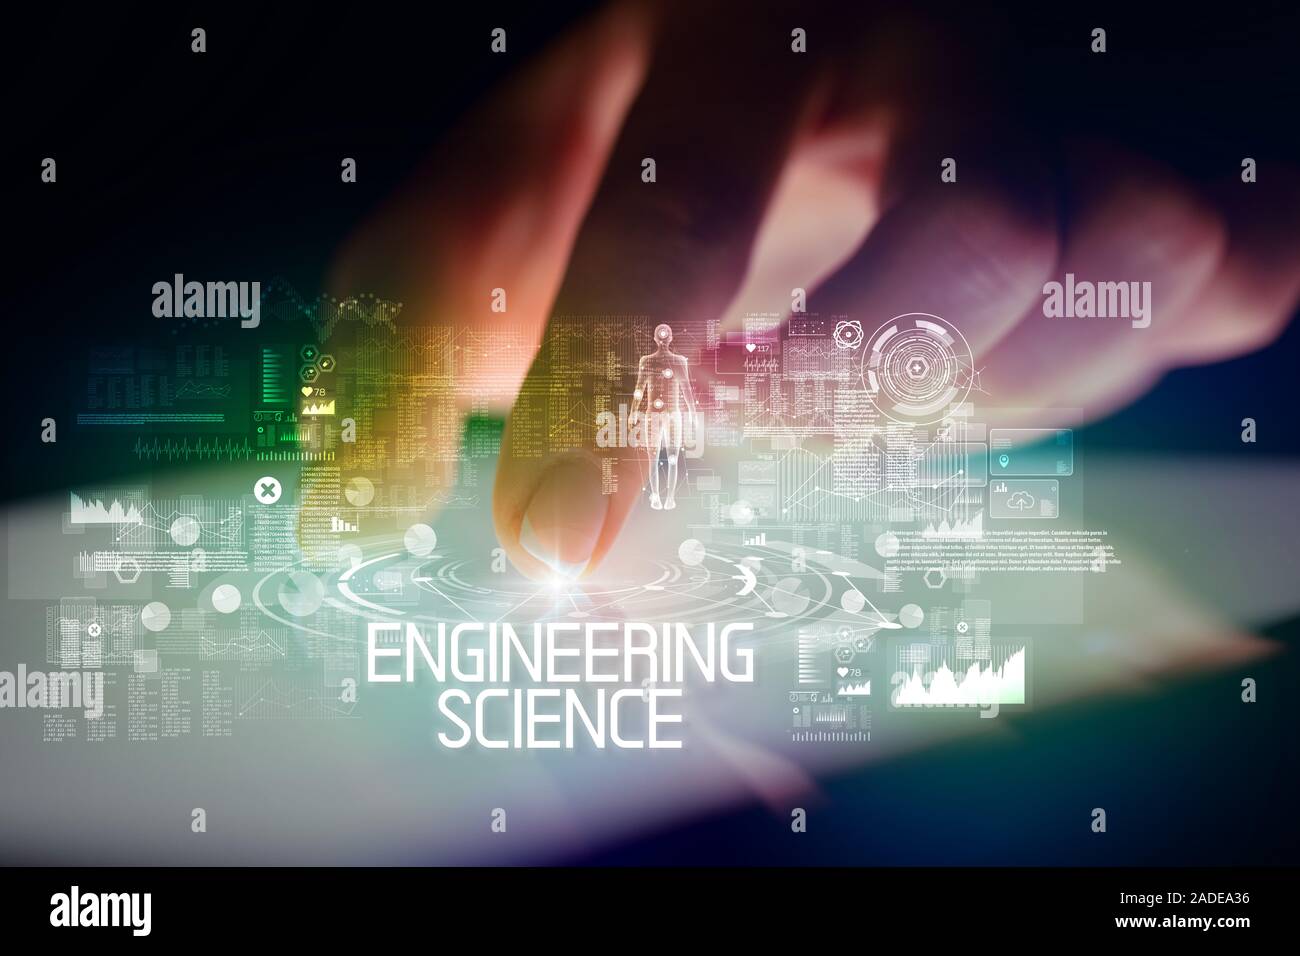 Finger touching tablet à la technologie web icones et sciences techniques inscription Banque D'Images